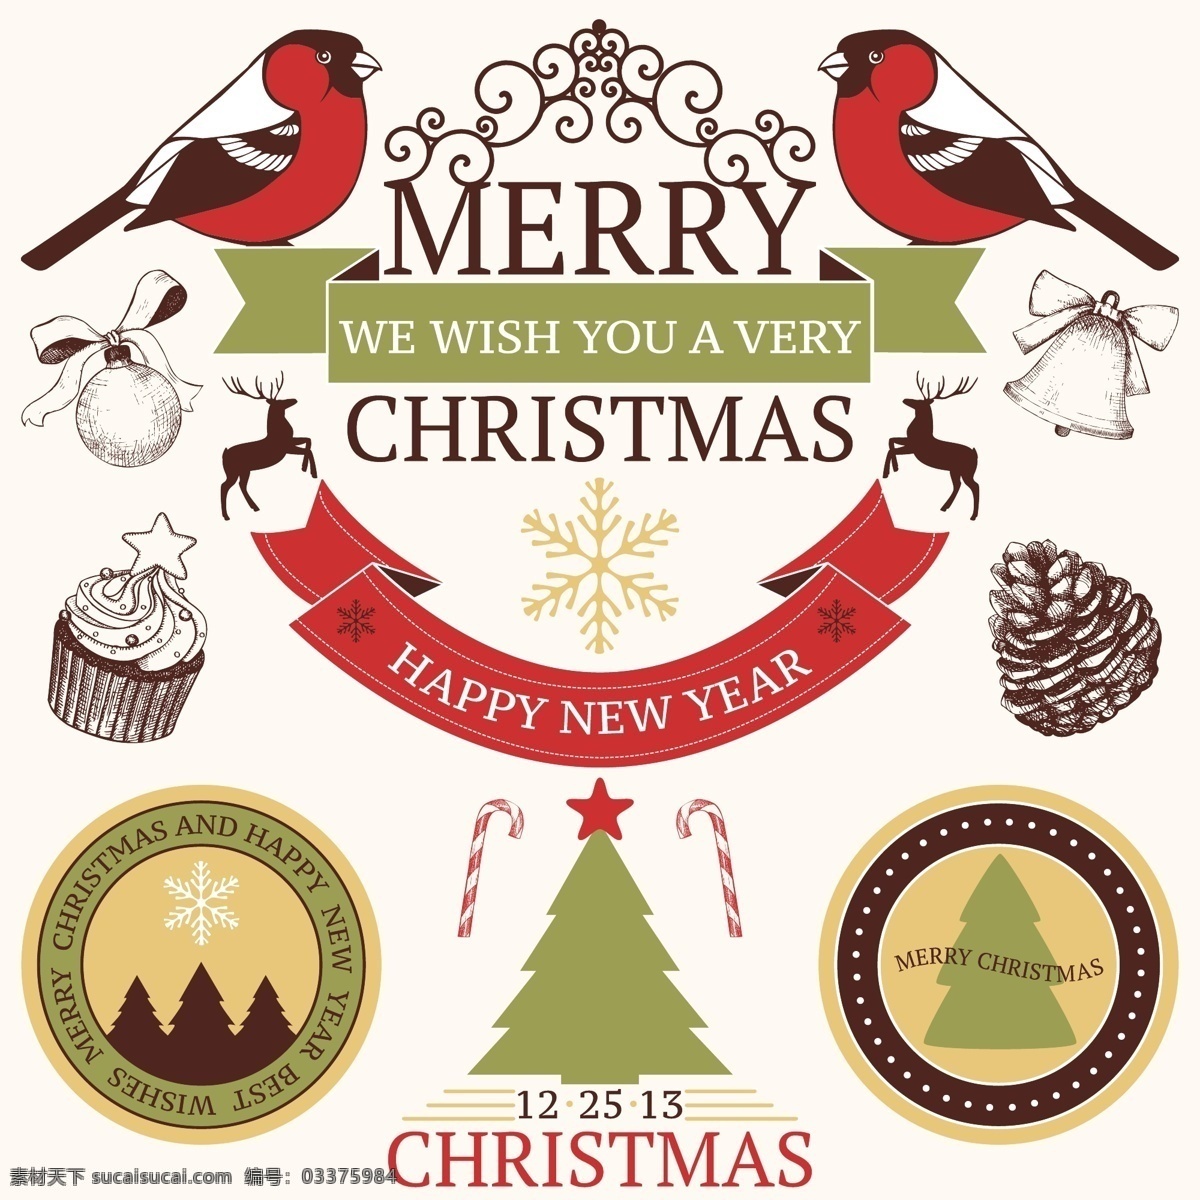 圣诞节 食物 简约 图标 矢量 礼物 小鸟 卡通 可爱 矢量素材 平面素材